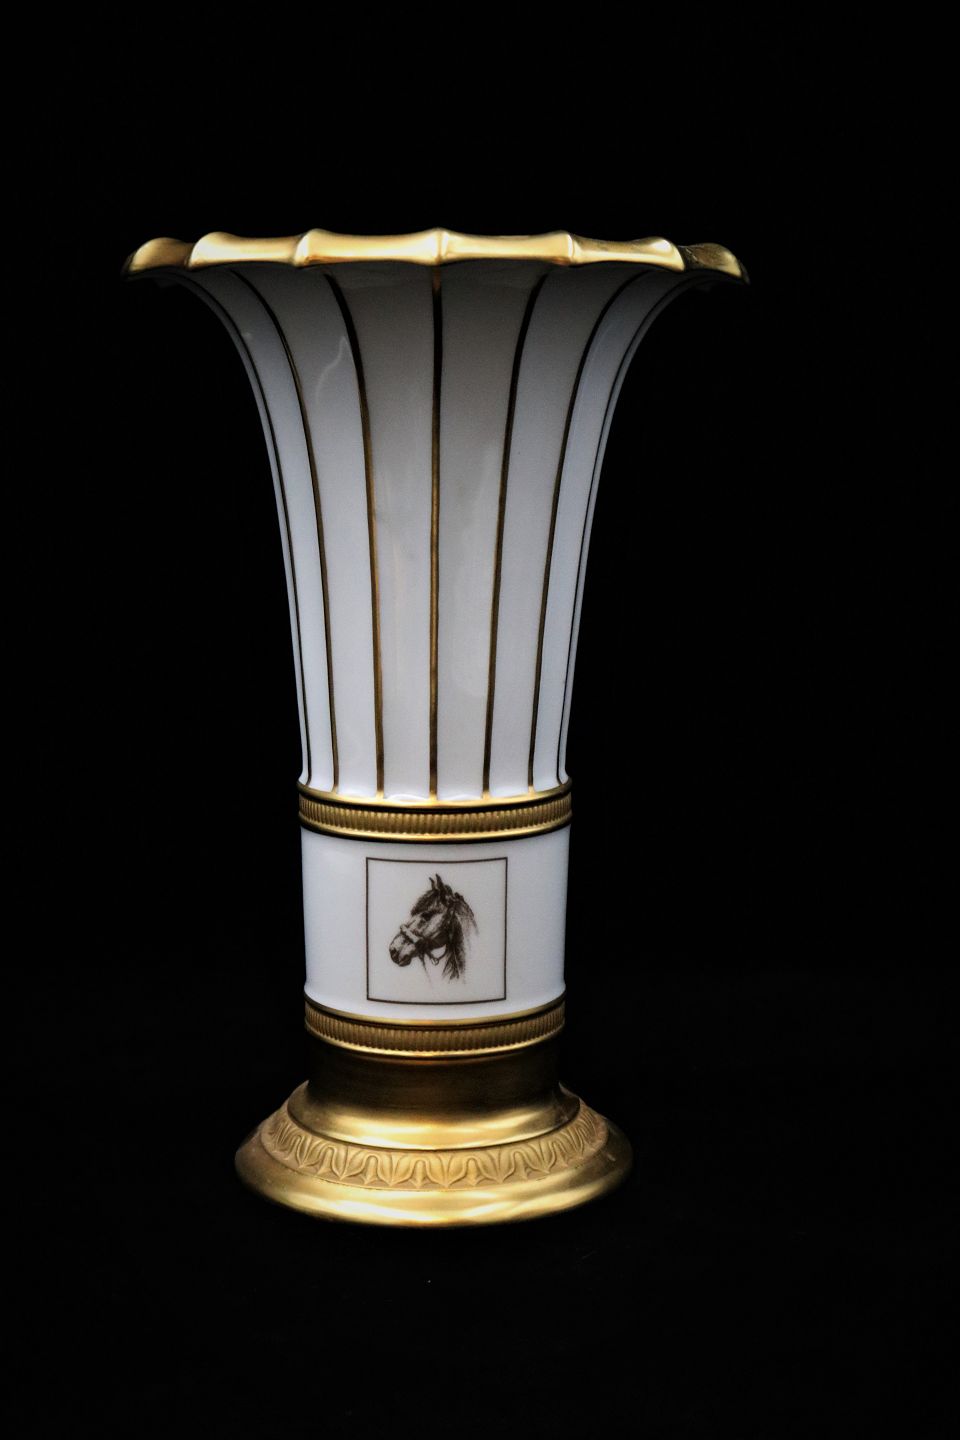 kyst magasin Stjerne K&Co - Royal Copenhagen Hetsch vase , hvid- guld med heste motiv fra  "LUNDEN" Derby Vas